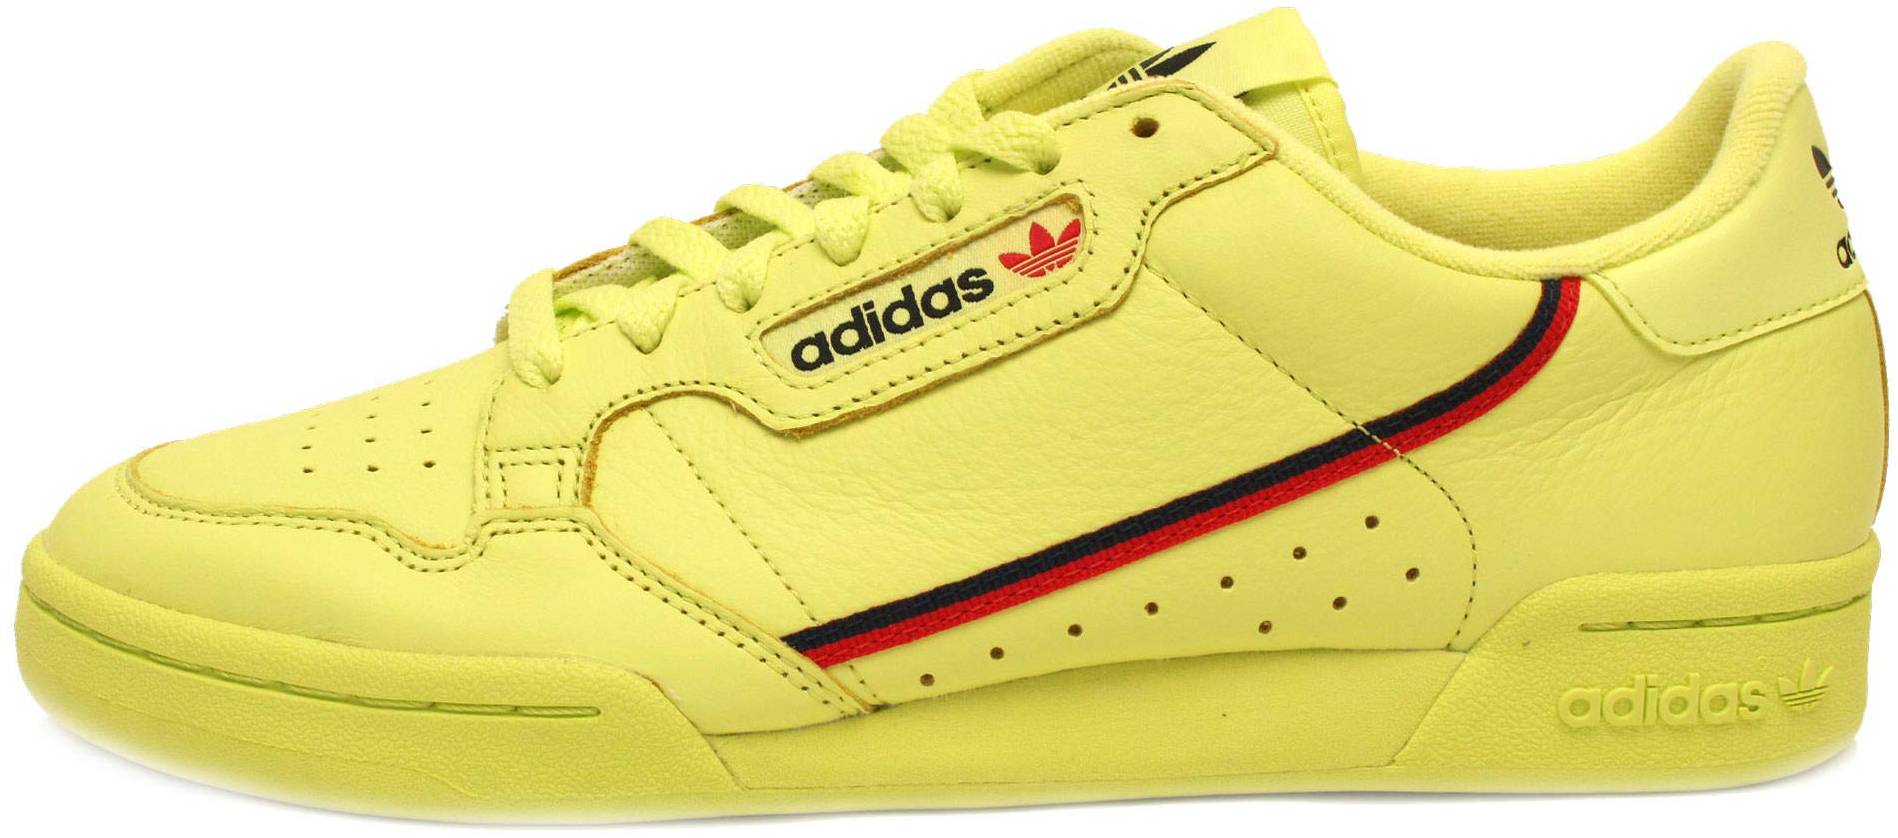 yellow shoes mens adidas